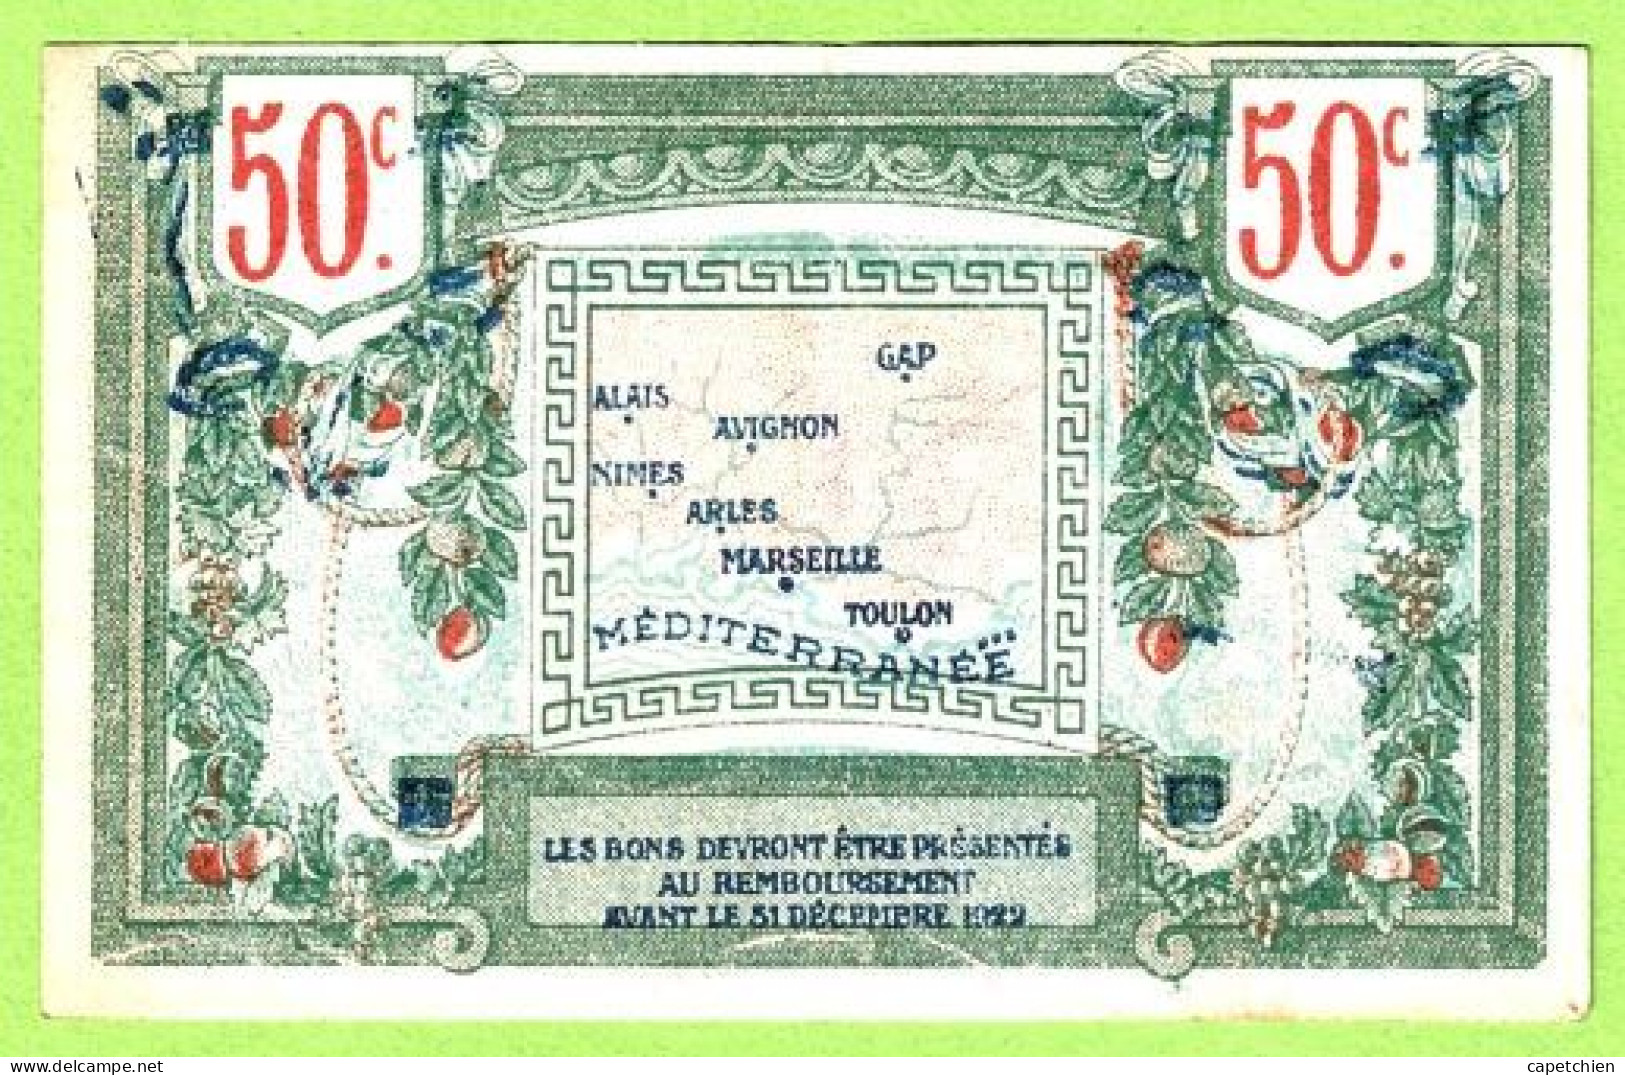 FRANCE / CHAMBRE De COMMERCE / REGION PROVENCALE / 50 CENTIMES / 119663 / R  SERIE 61 - Chambre De Commerce